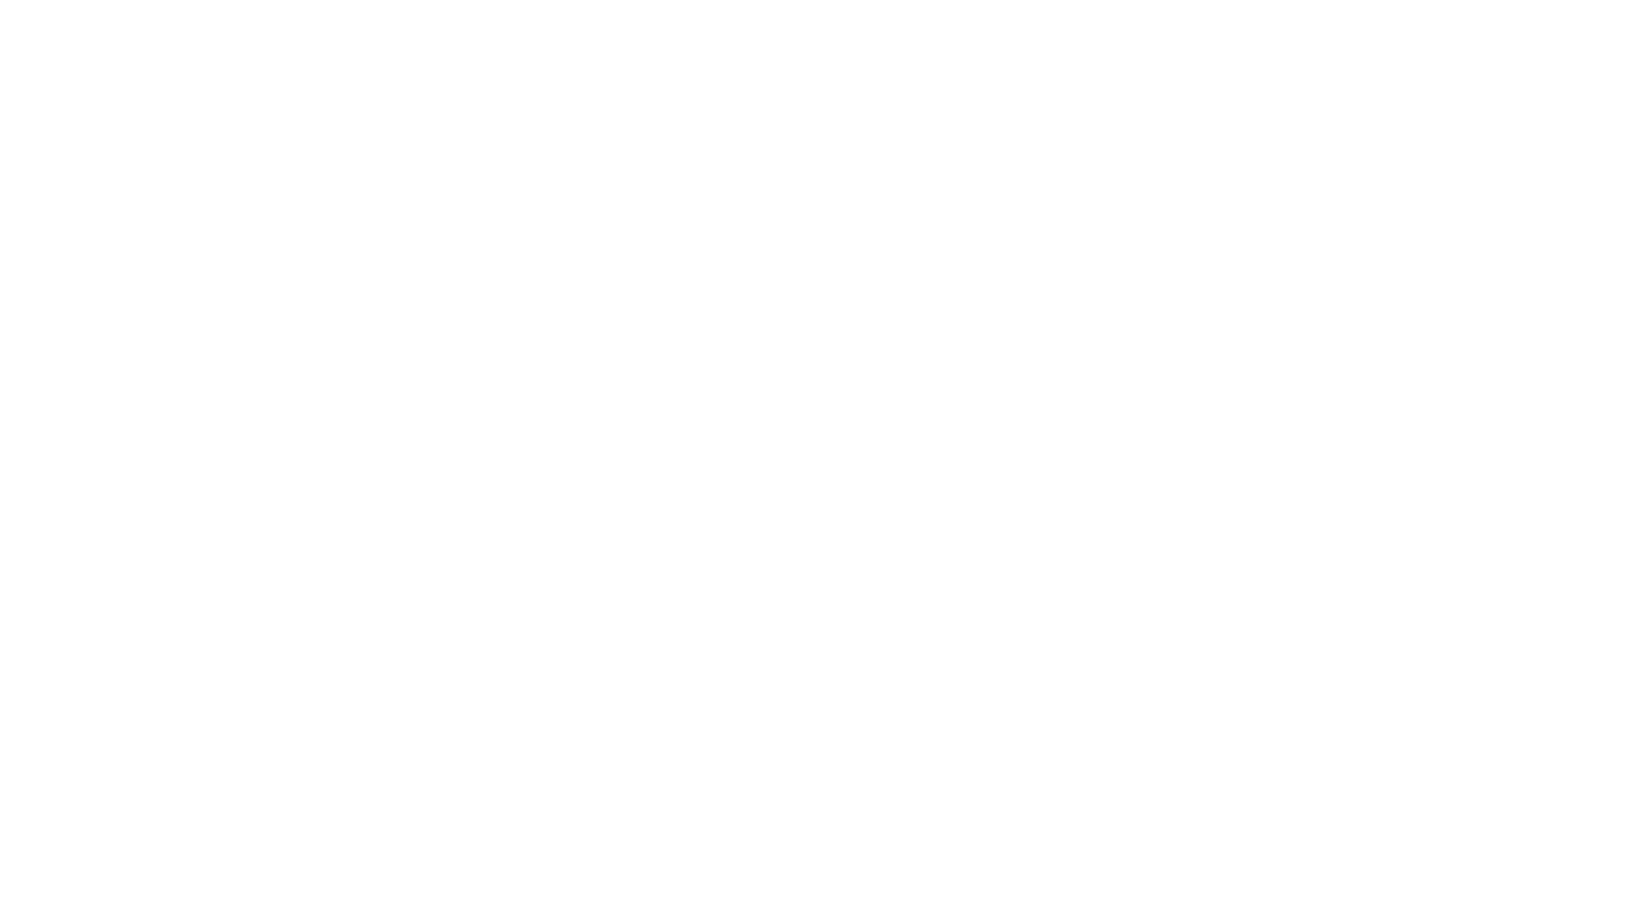 Кейс сервиса BRANDNATION - Логотип и фирменный стиль кафе-кондитерской. Брендинговое агентство BRANDNATION в Москве и Санкт-Петербурге. Услуги: разработка логотипа и фирменного стиля, дизайн упаковки, брендбук, ребрендинг, разработка сайта.